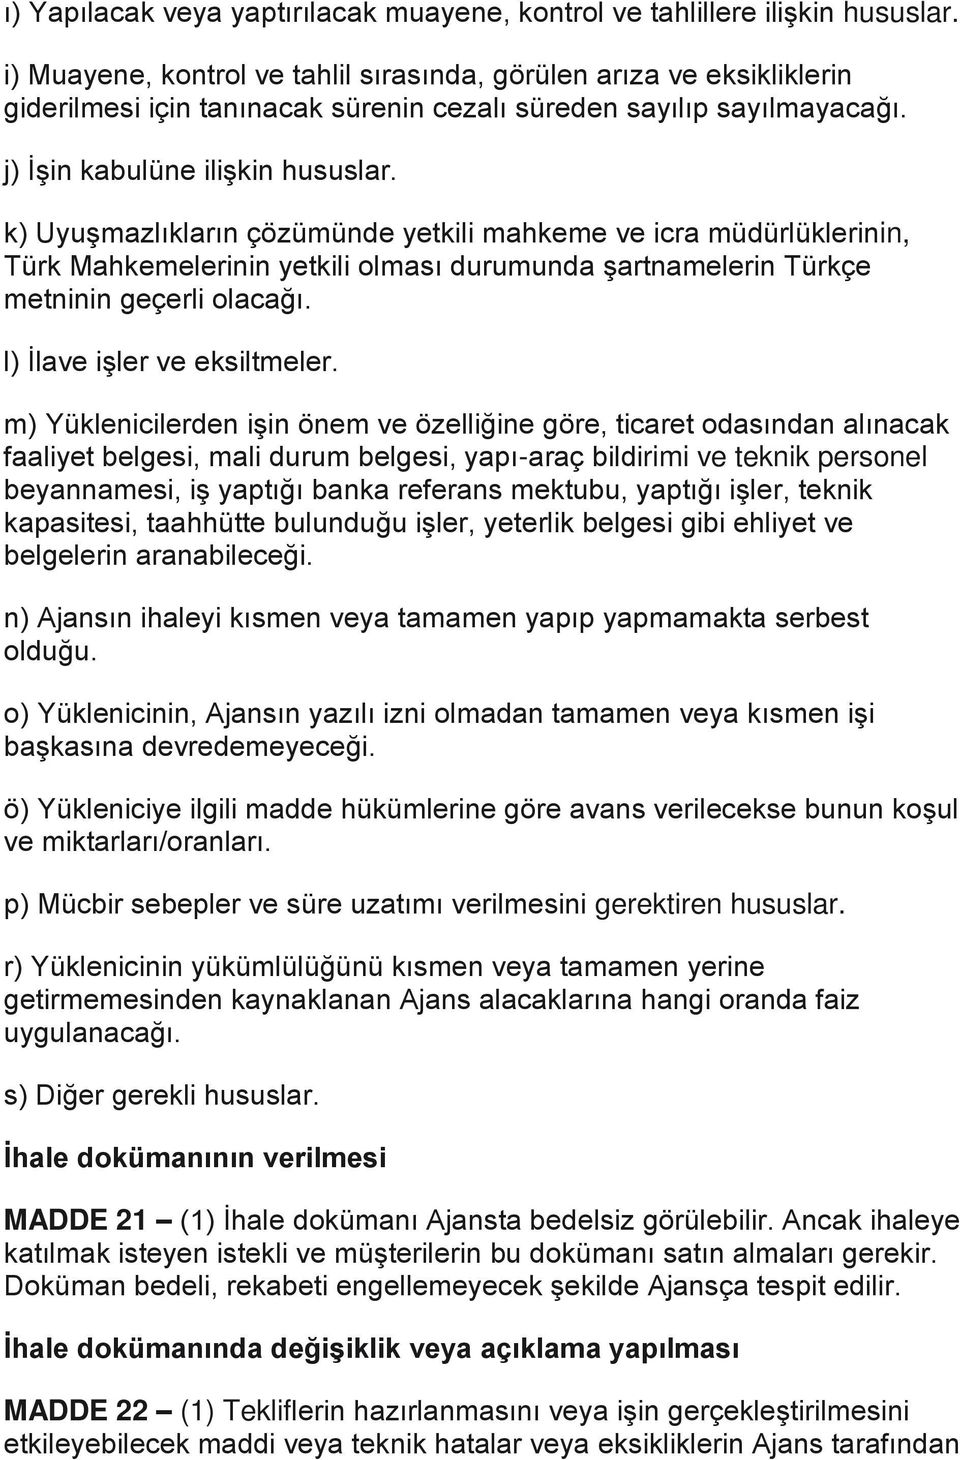 k) Uyuşmazlıkların çözümünde yetkili mahkeme ve icra müdürlüklerinin, Türk Mahkemelerinin yetkili olması durumunda şartnamelerin Türkçe metninin geçerli olacağı. l) İlave işler ve eksiltmeler.